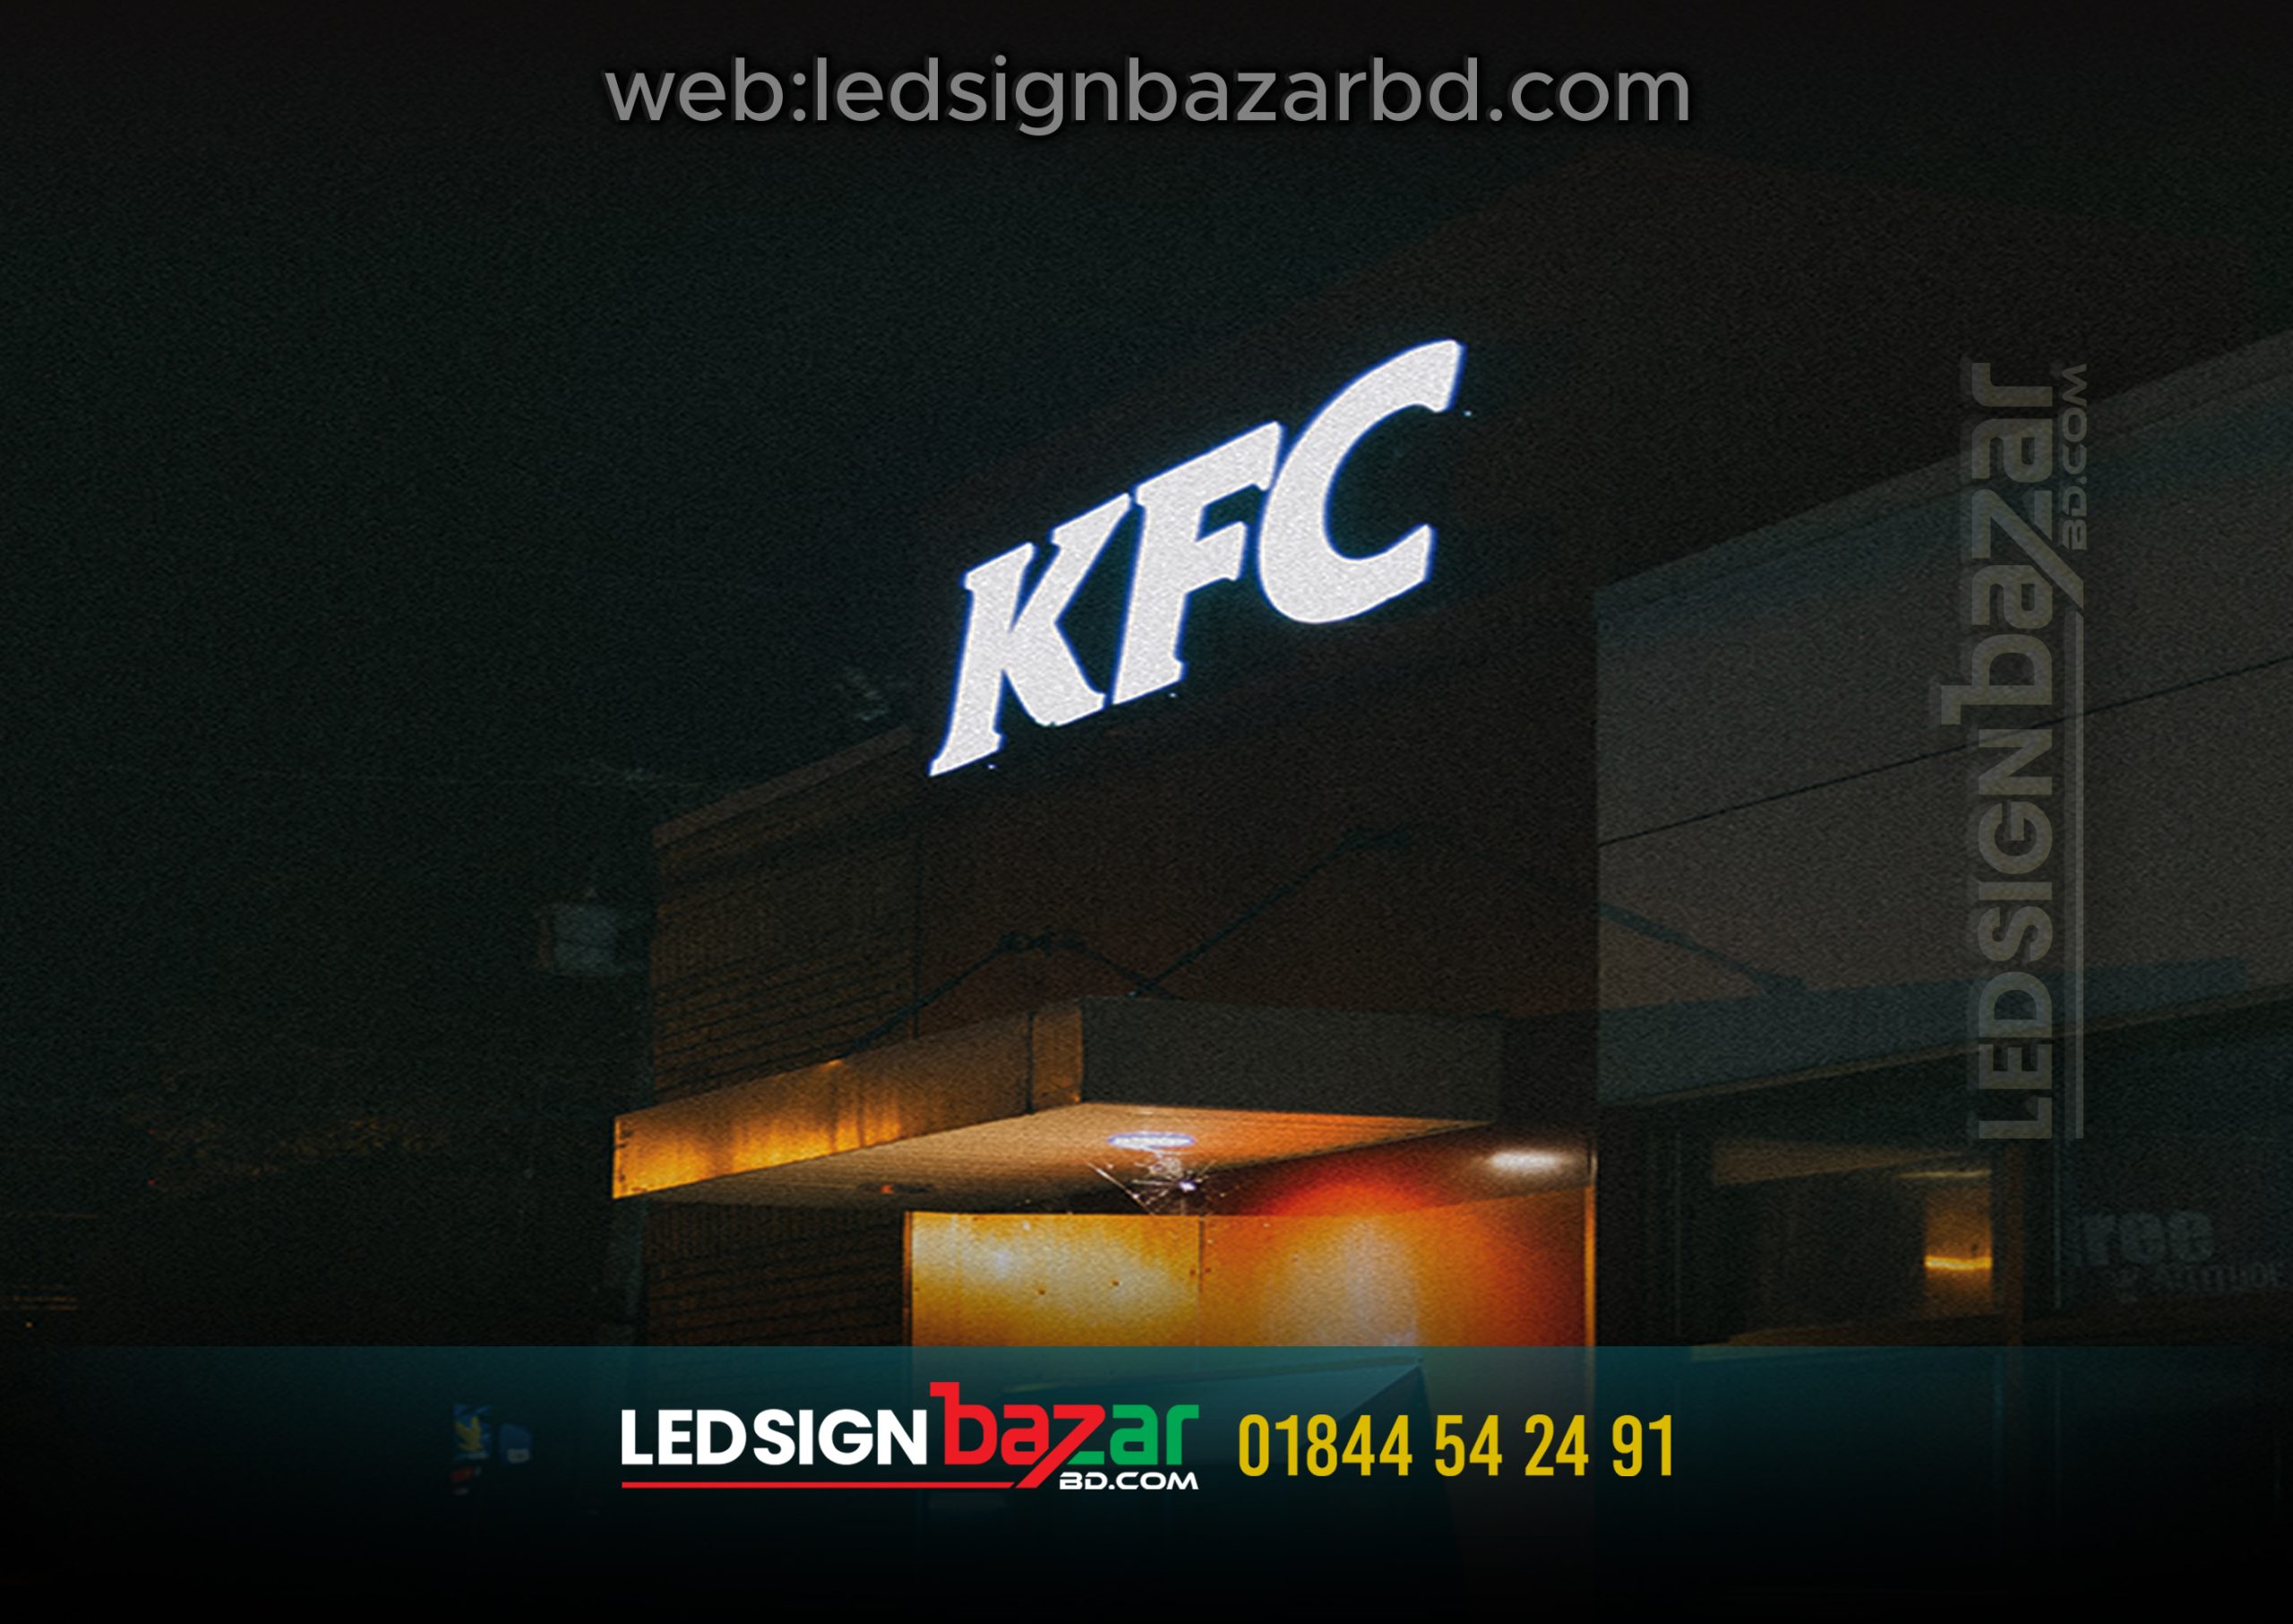 KFC LIGHTING LETTER MAKING BY LED SIGN BAZAR BD